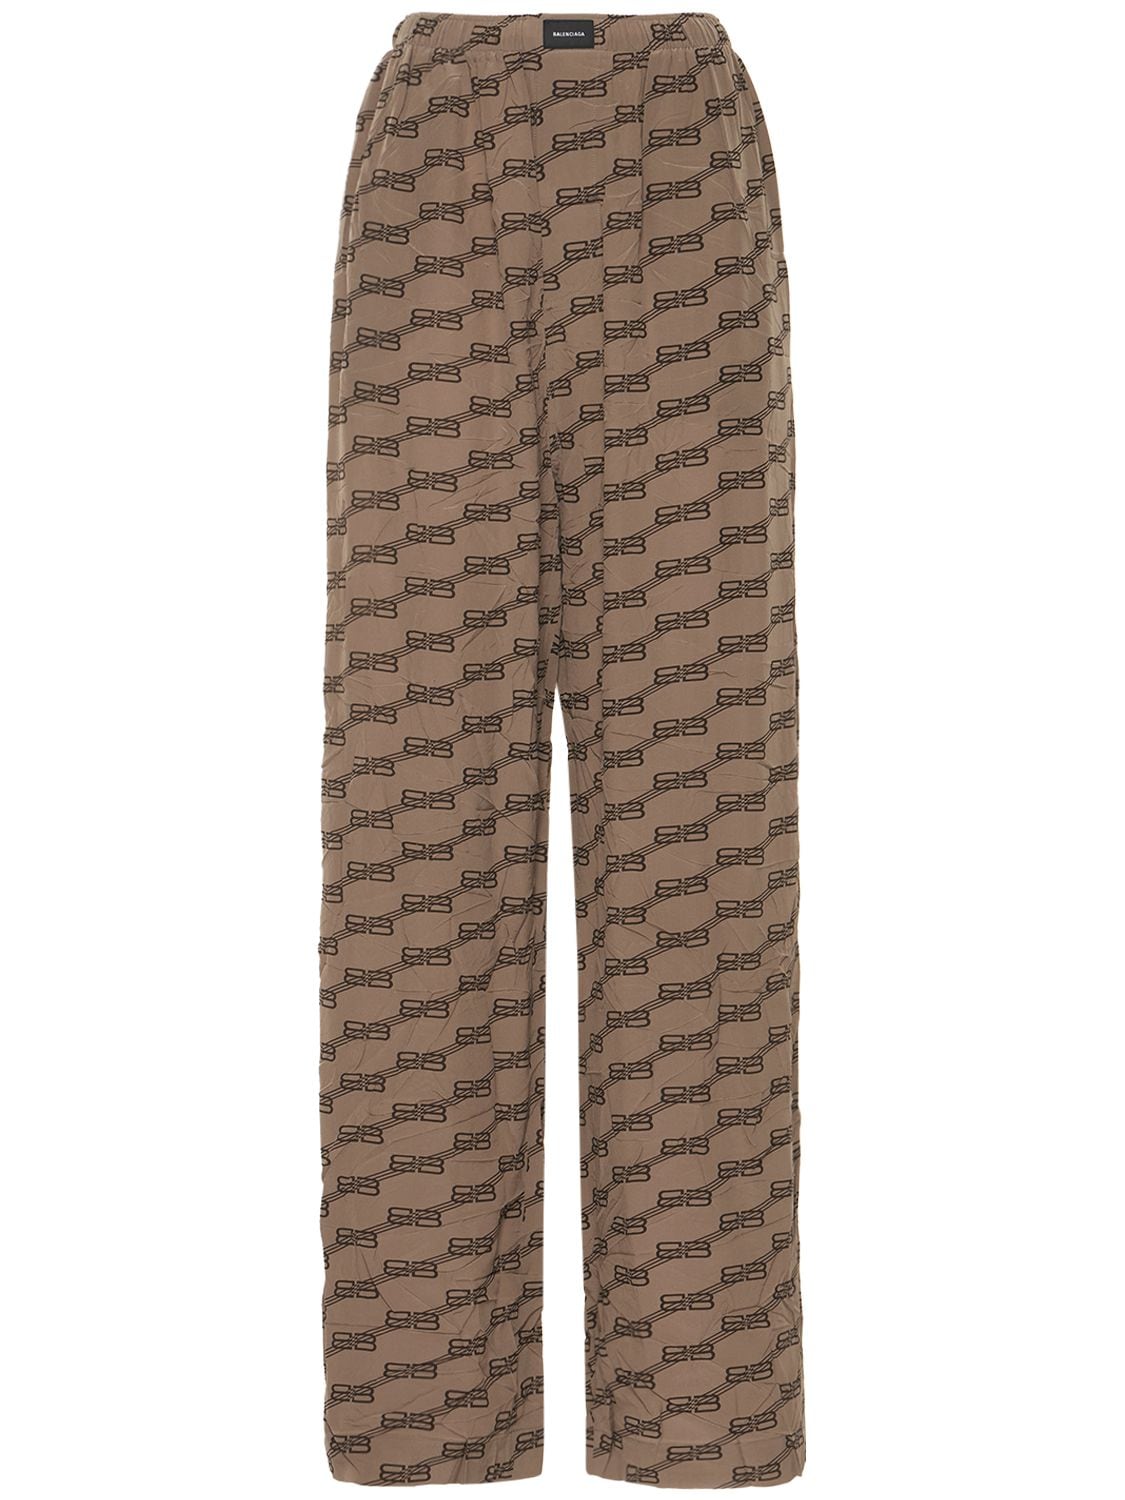 Balenciaga - Monogram logo pajama pants - Beige/Brown | Luisaviaroma